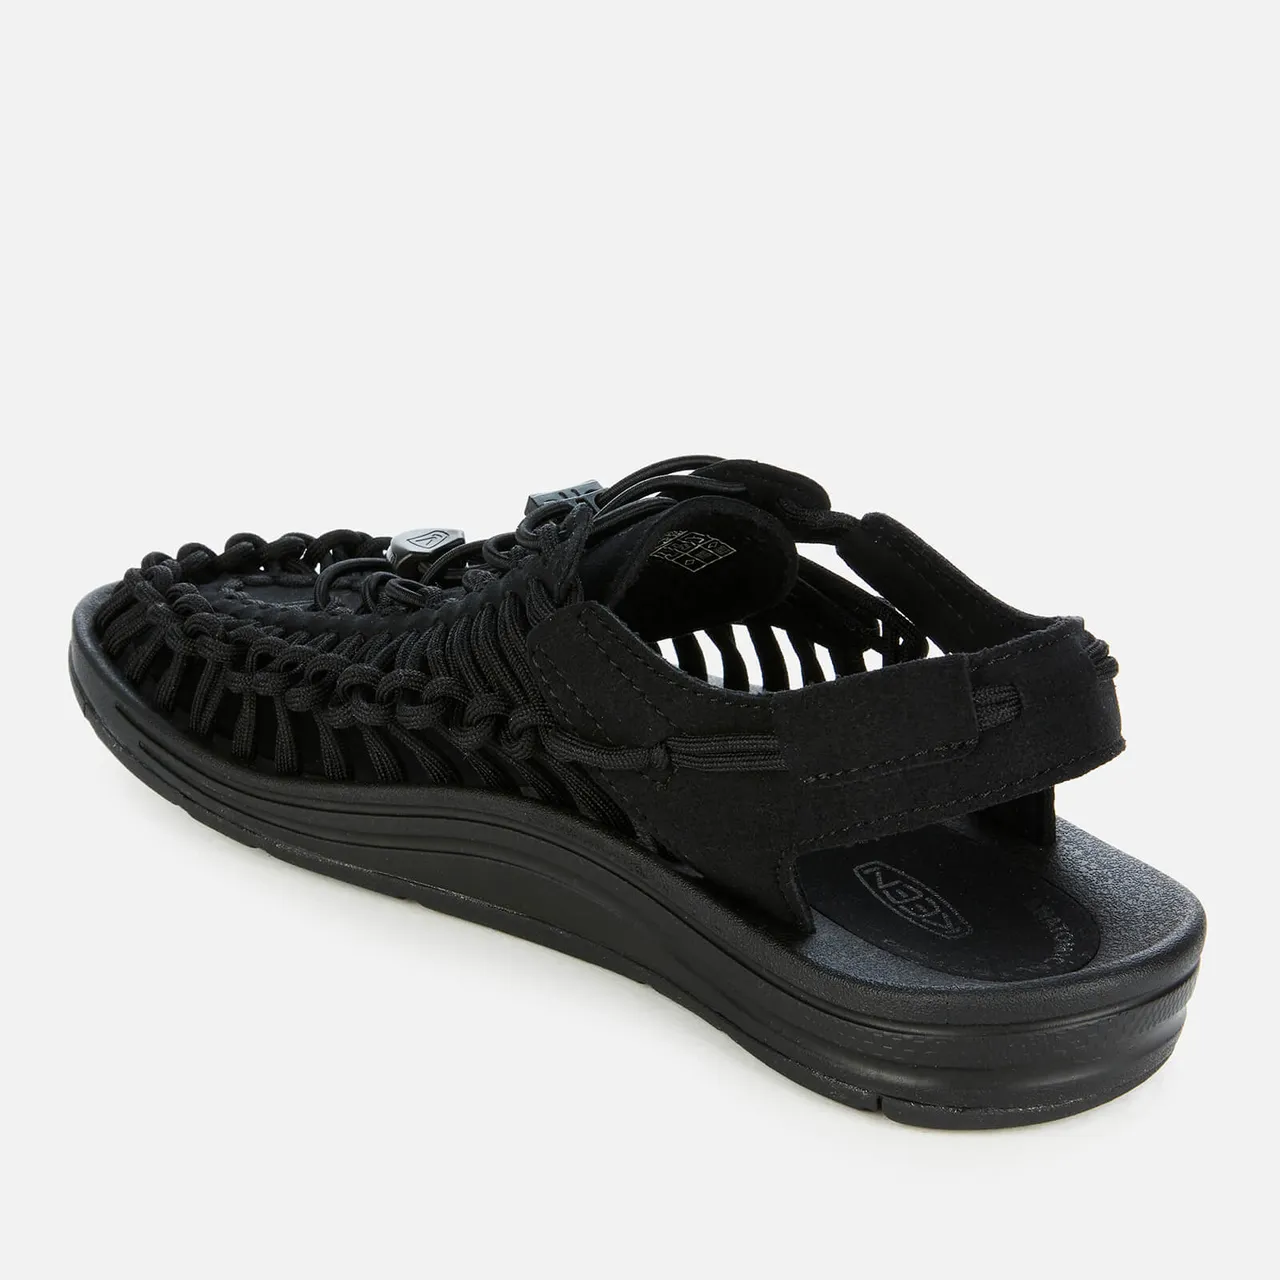 Keen Women's Uneek Sandals - Black/Black - UK